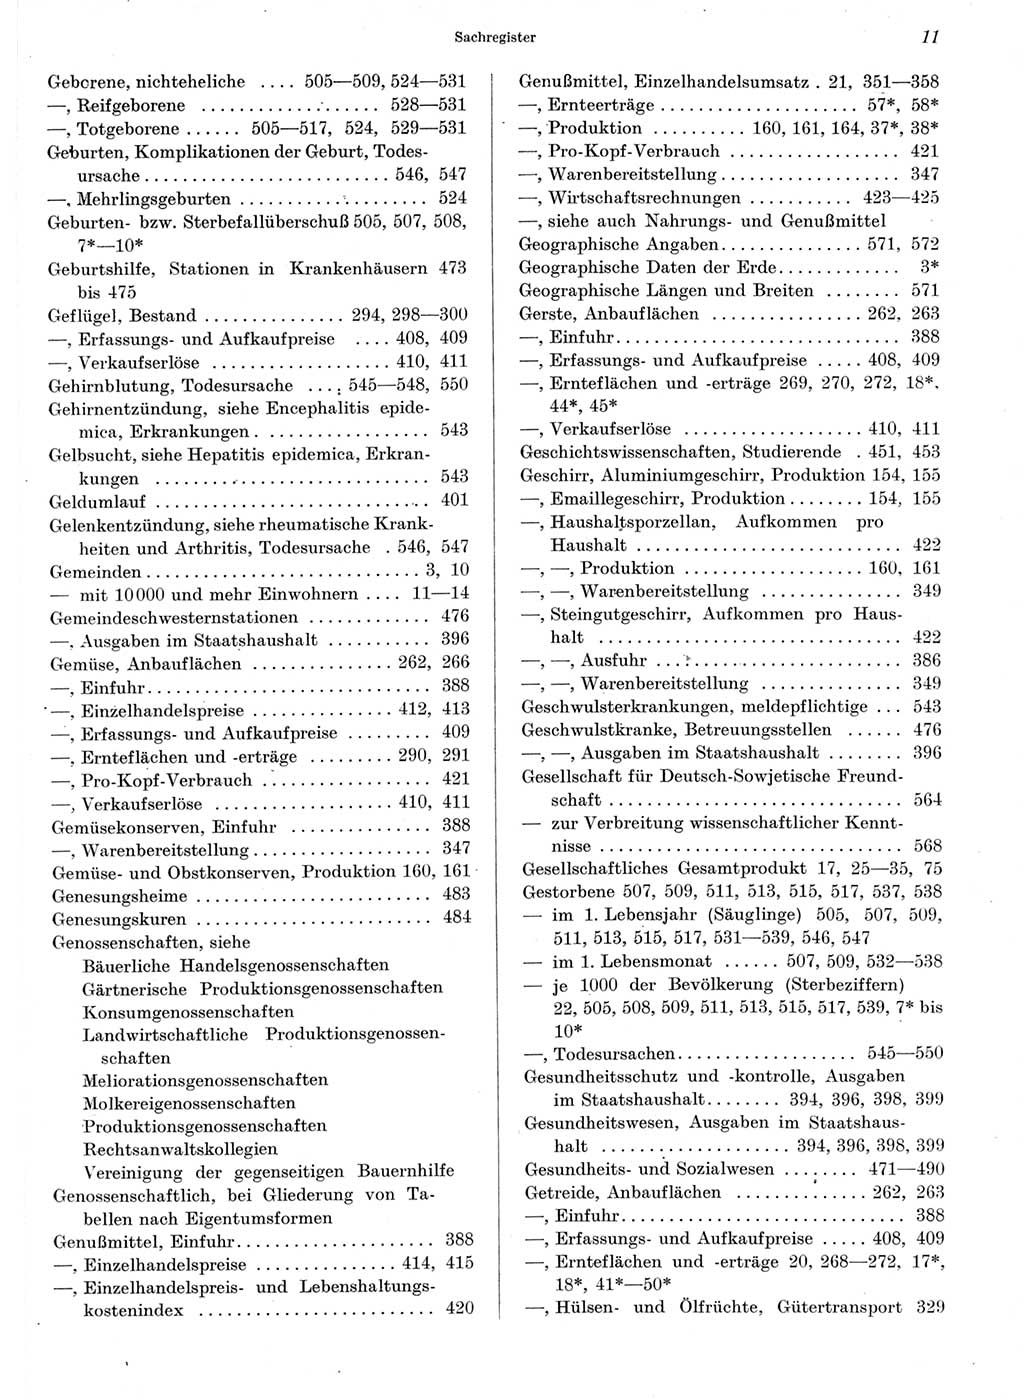 Statistisches Jahrbuch der Deutschen Demokratischen Republik (DDR) 1964, Seite 11 (Stat. Jb. DDR 1964, S. 11)